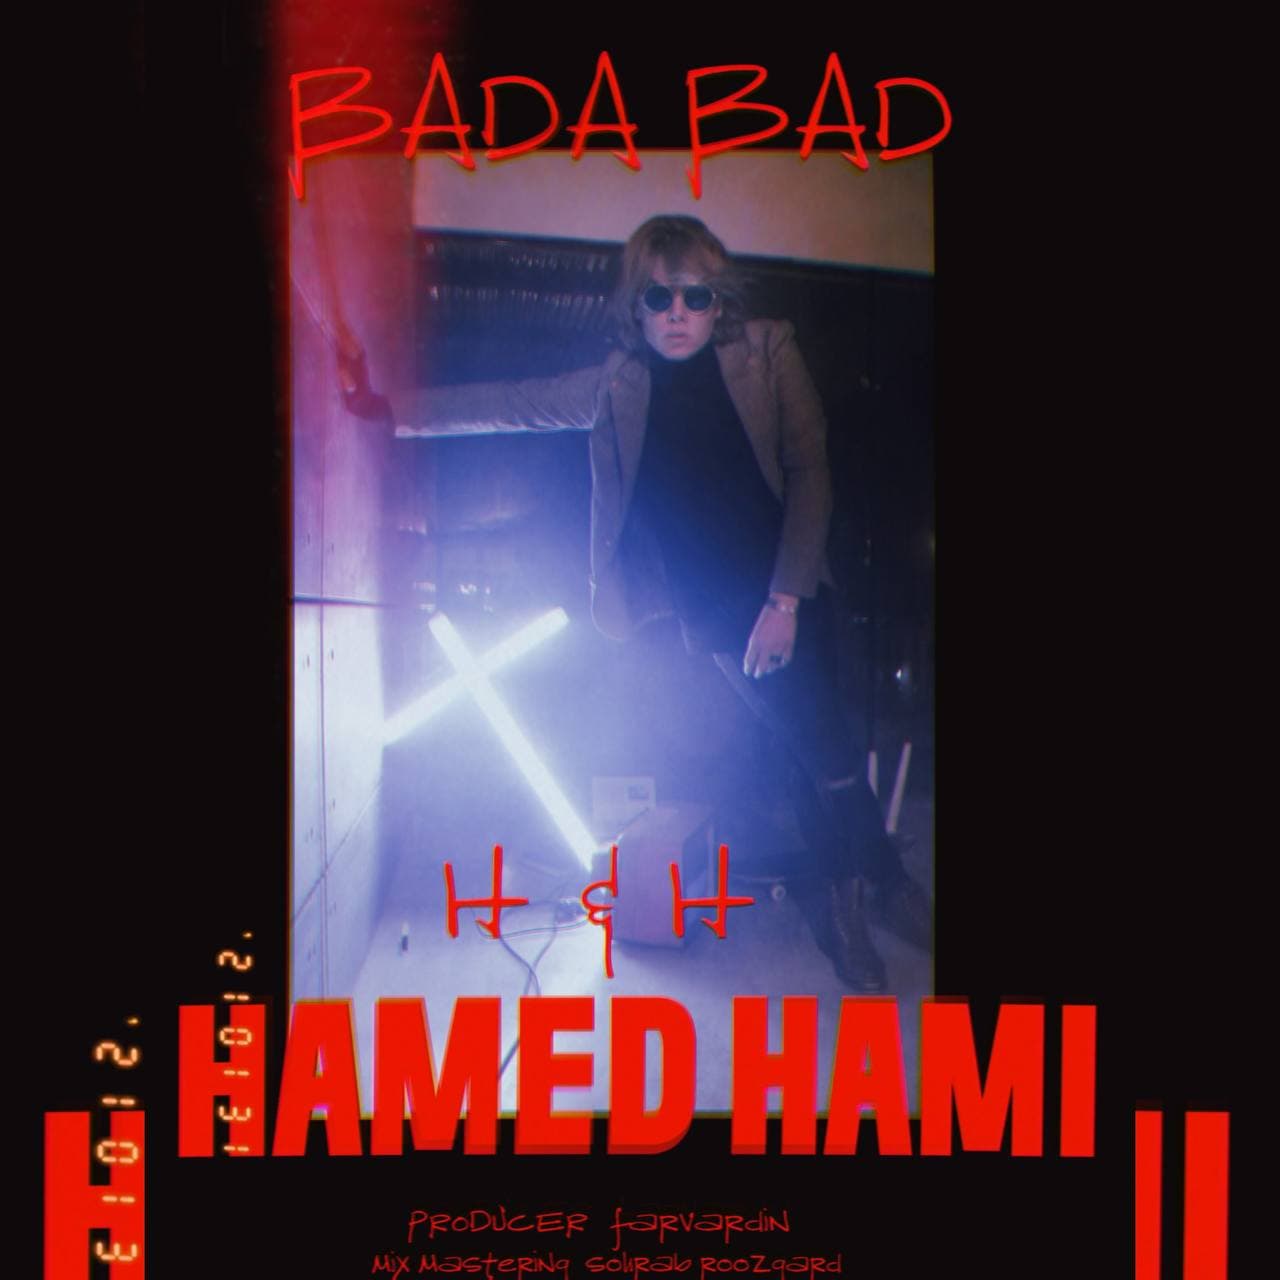  دانلود آهنگ جدید حامد حامی - بادا باد | Download New Music By Hamed Hami - Bada Bad